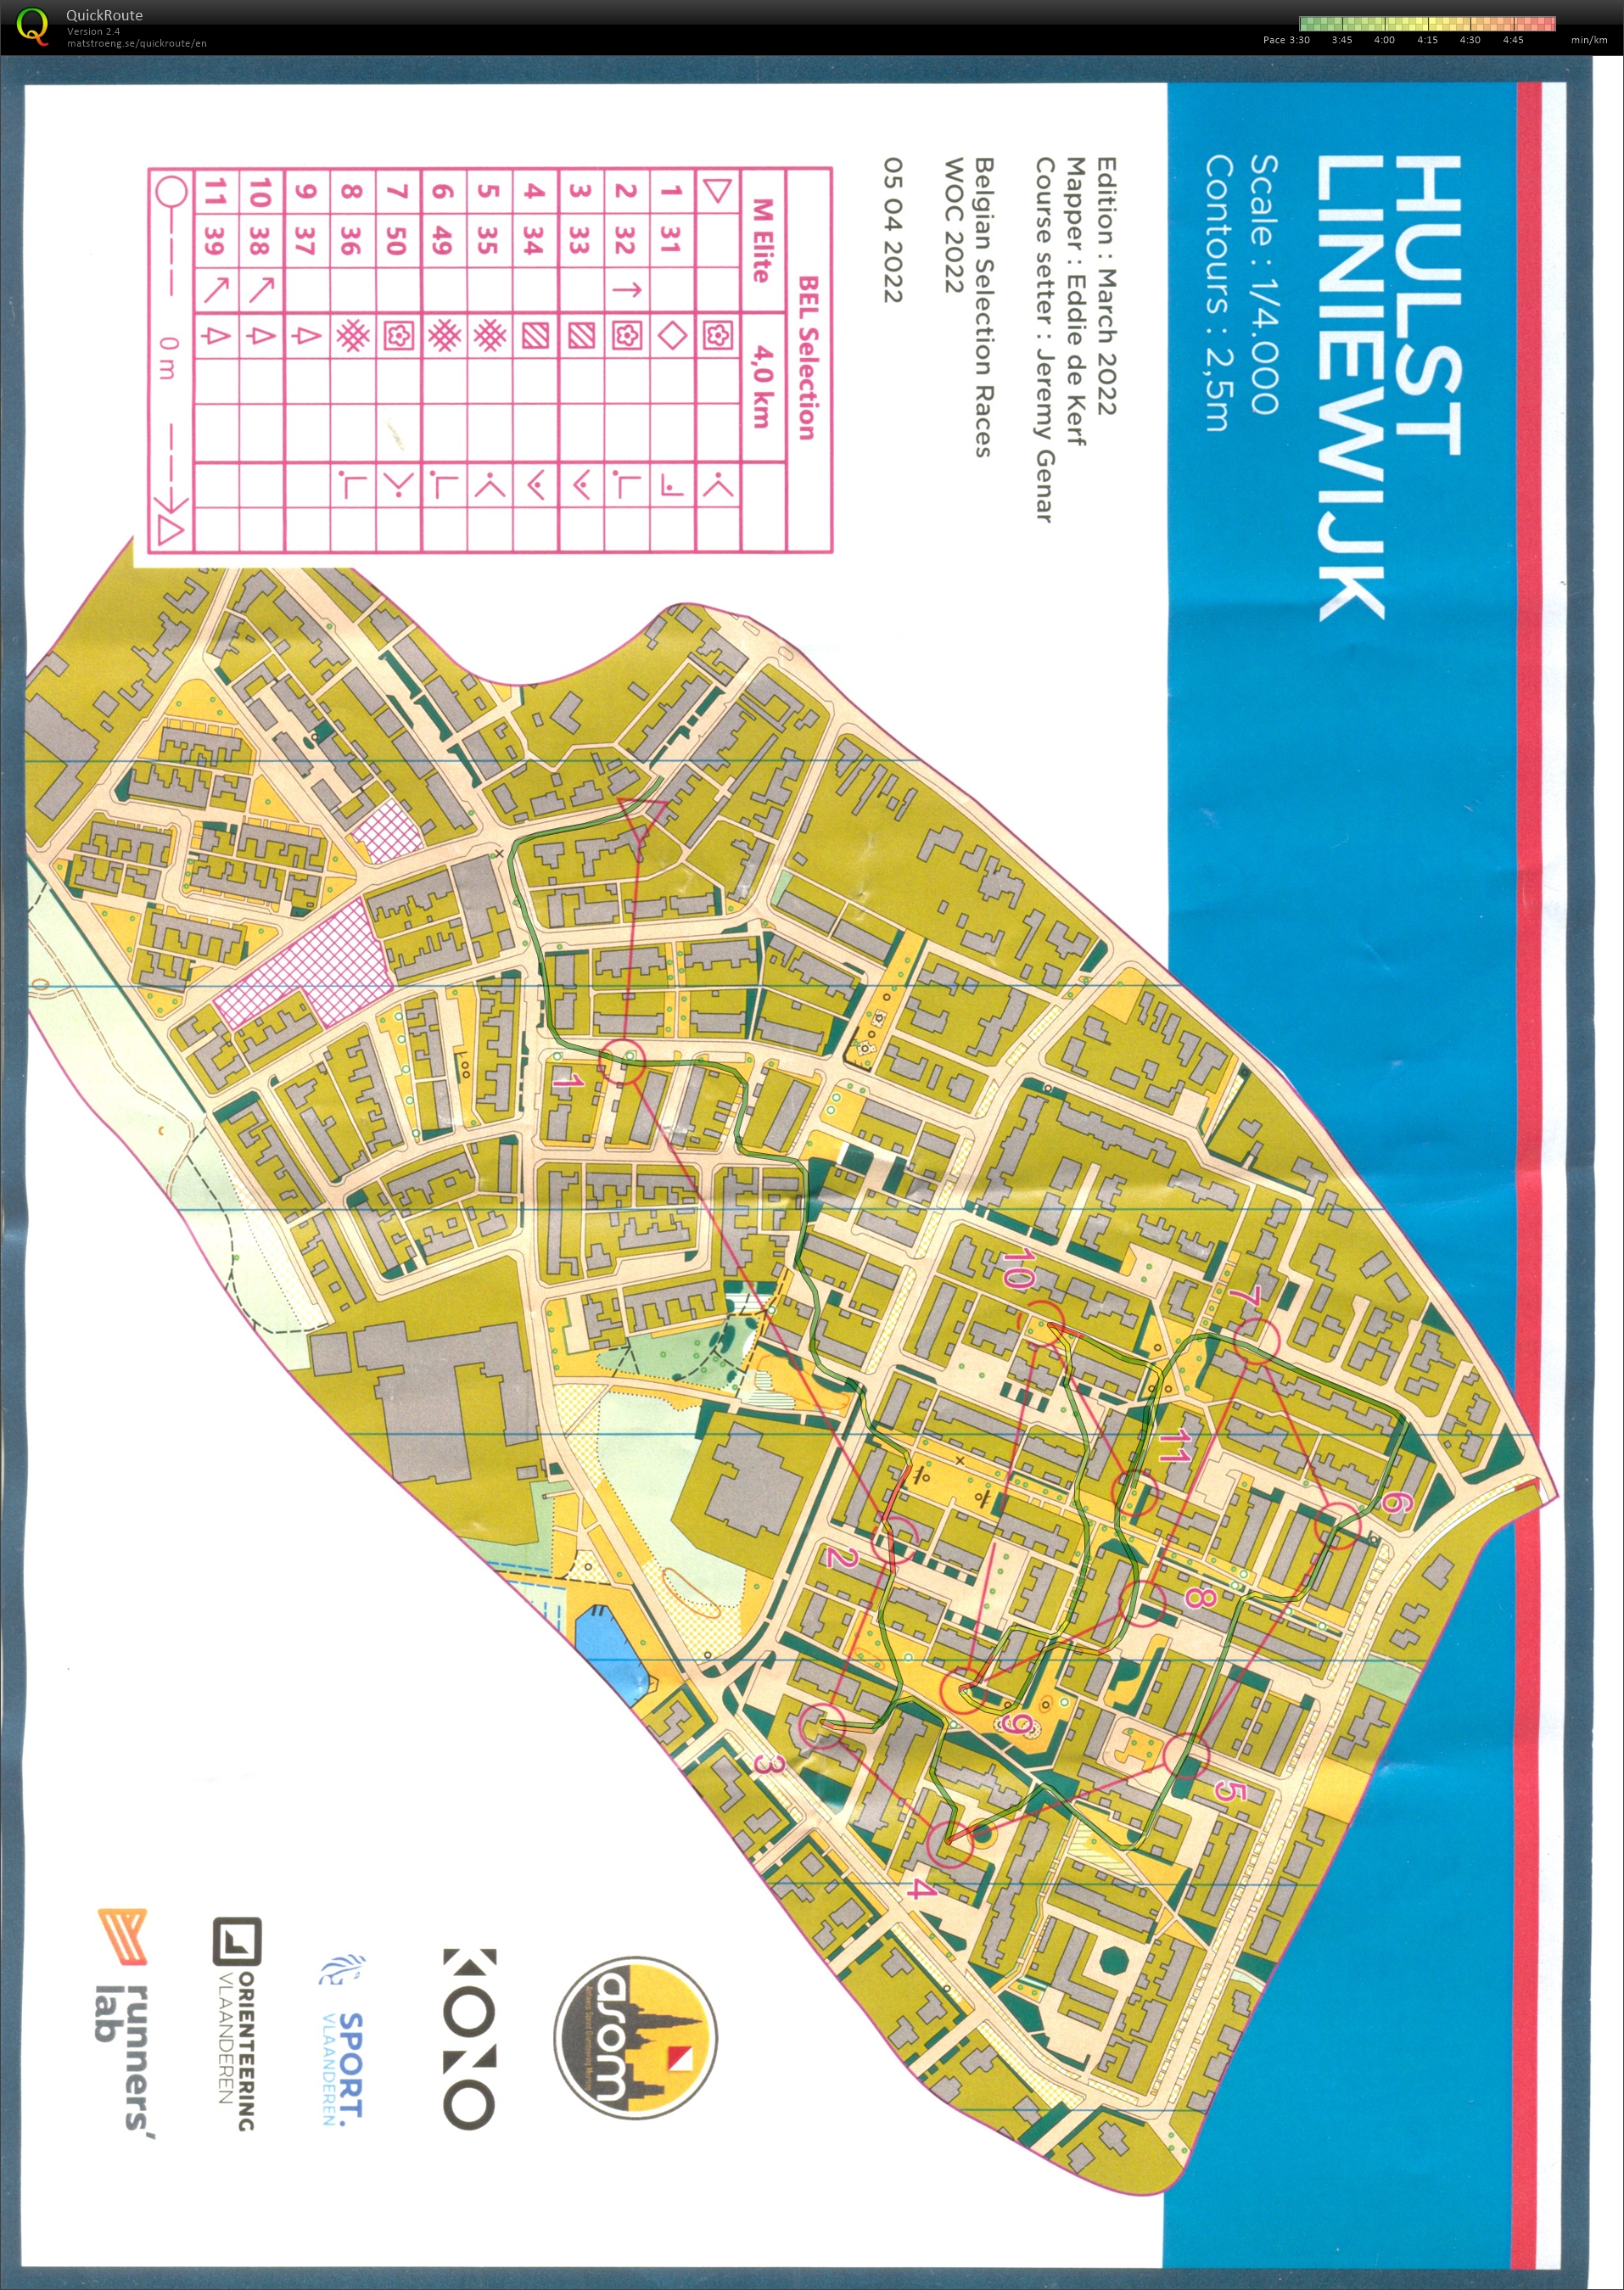 Belgian Sprint selection race 2: Hulst Liniewijk part 1 (05/04/2022)